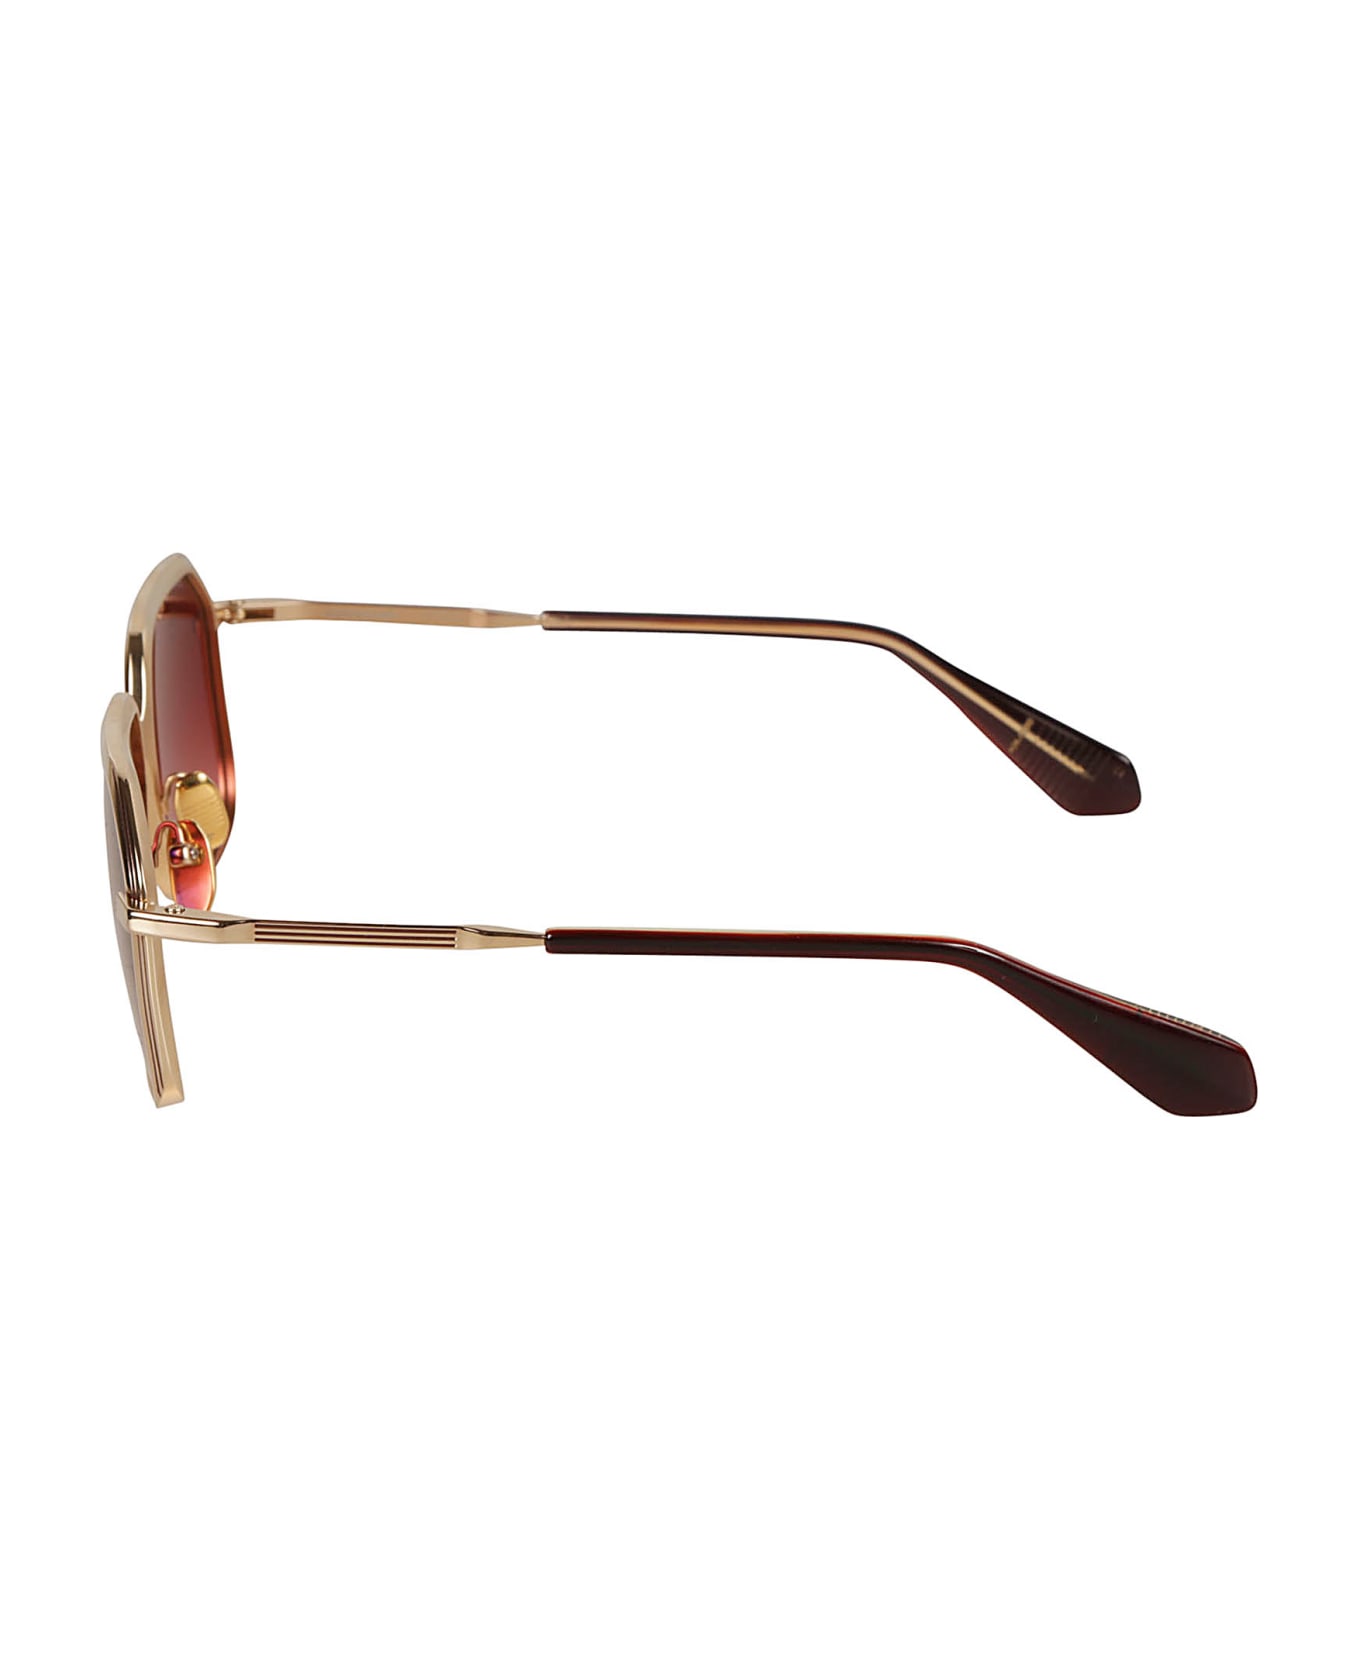 Jacques Marie Mage Aida Sunglasses Sunglasses - gold